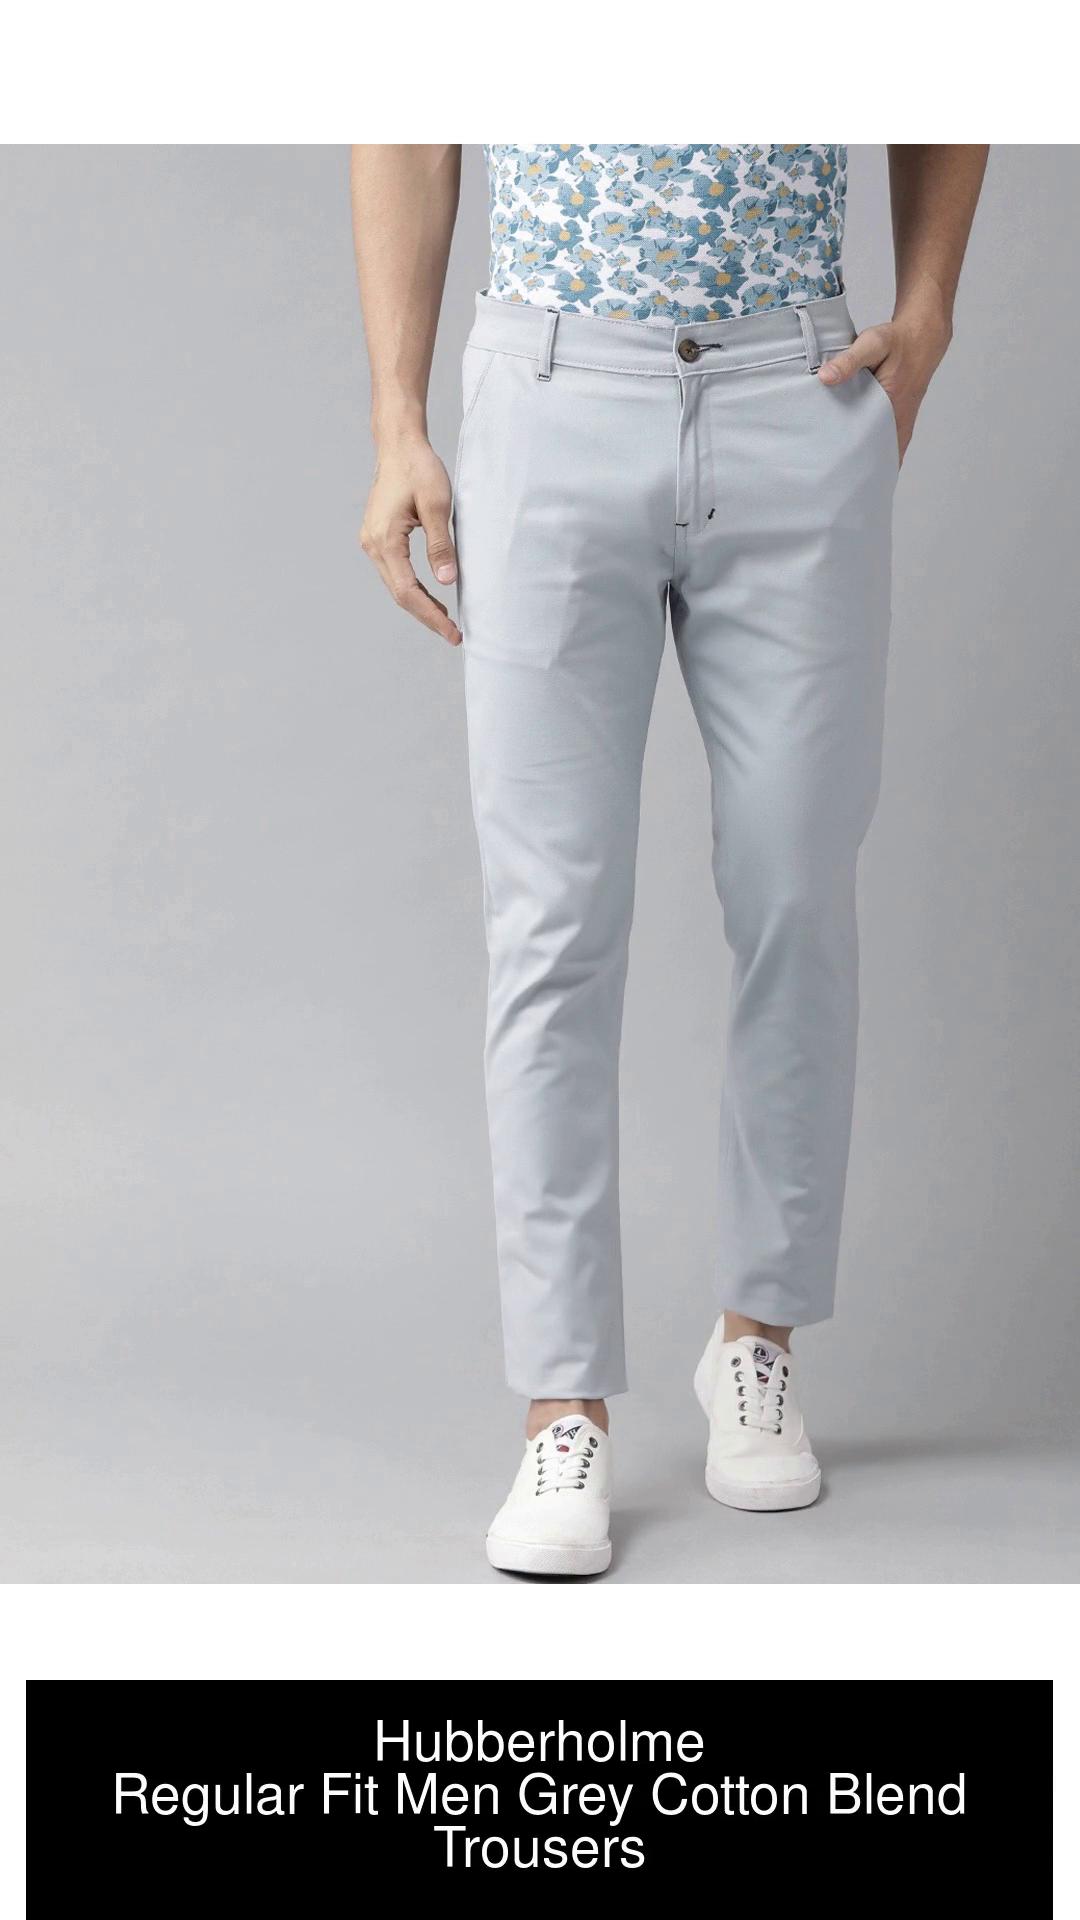 Hubberholme Regular Fit Men Grey Trousers  Buy Hubberholme Regular Fit Men  Grey Trousers Online at Best Prices in India  Flipkartcom